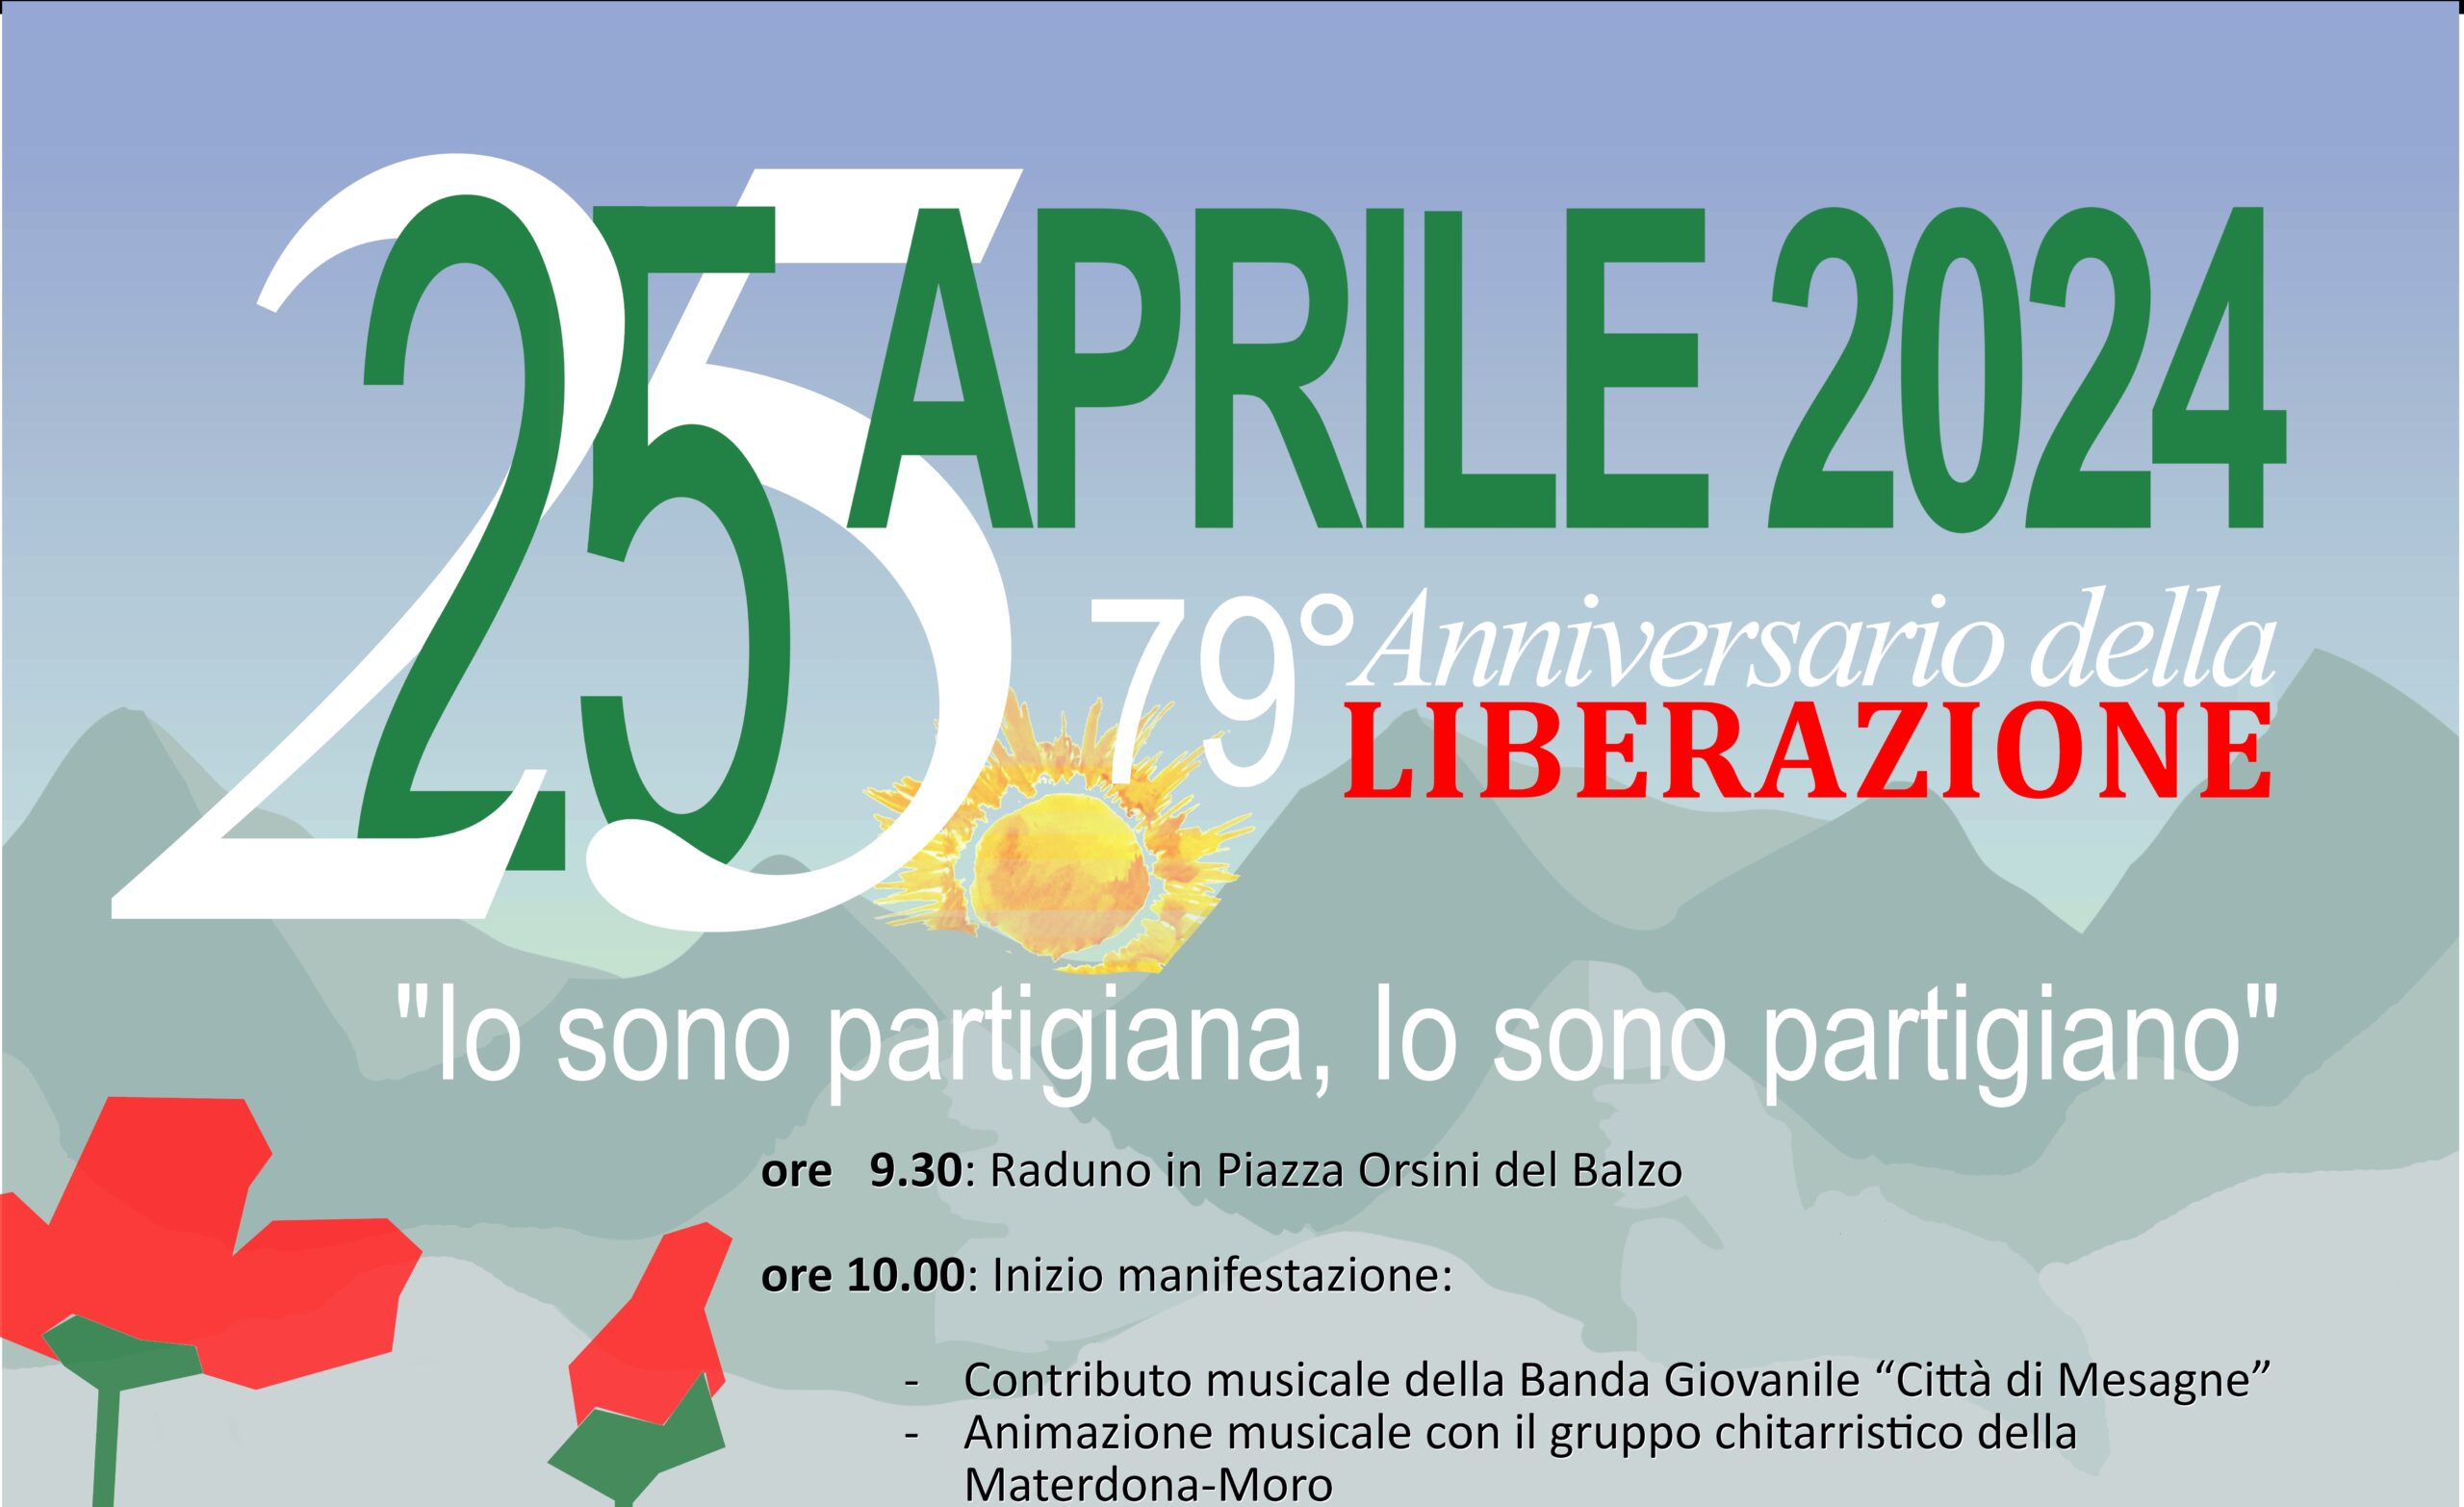 Mesagne: 79° Anniversario della Festa Liberazione, il programma del 25 Aprile